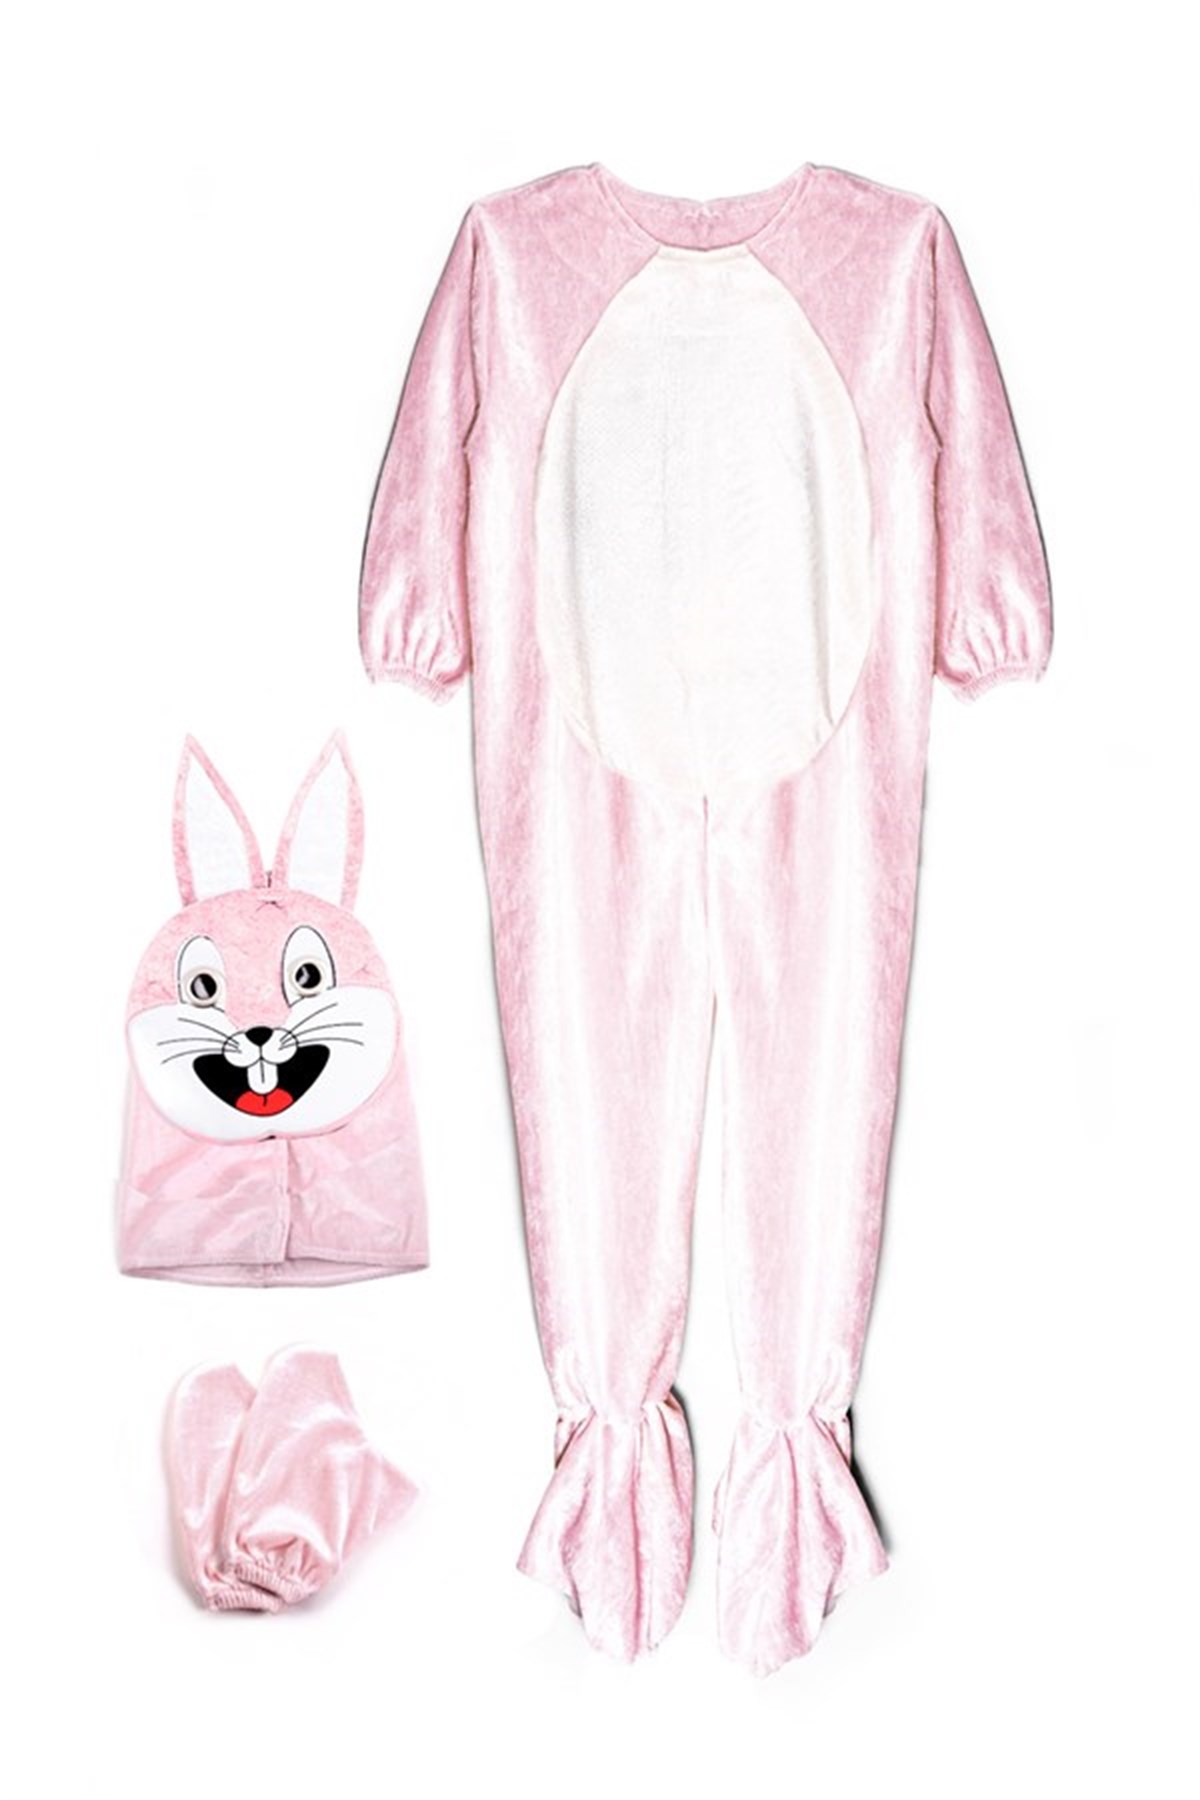 Tavşan Kostümü - Hayvan Kostümleri - Hayvan Kostüm Modelleri - Oulabi Mir